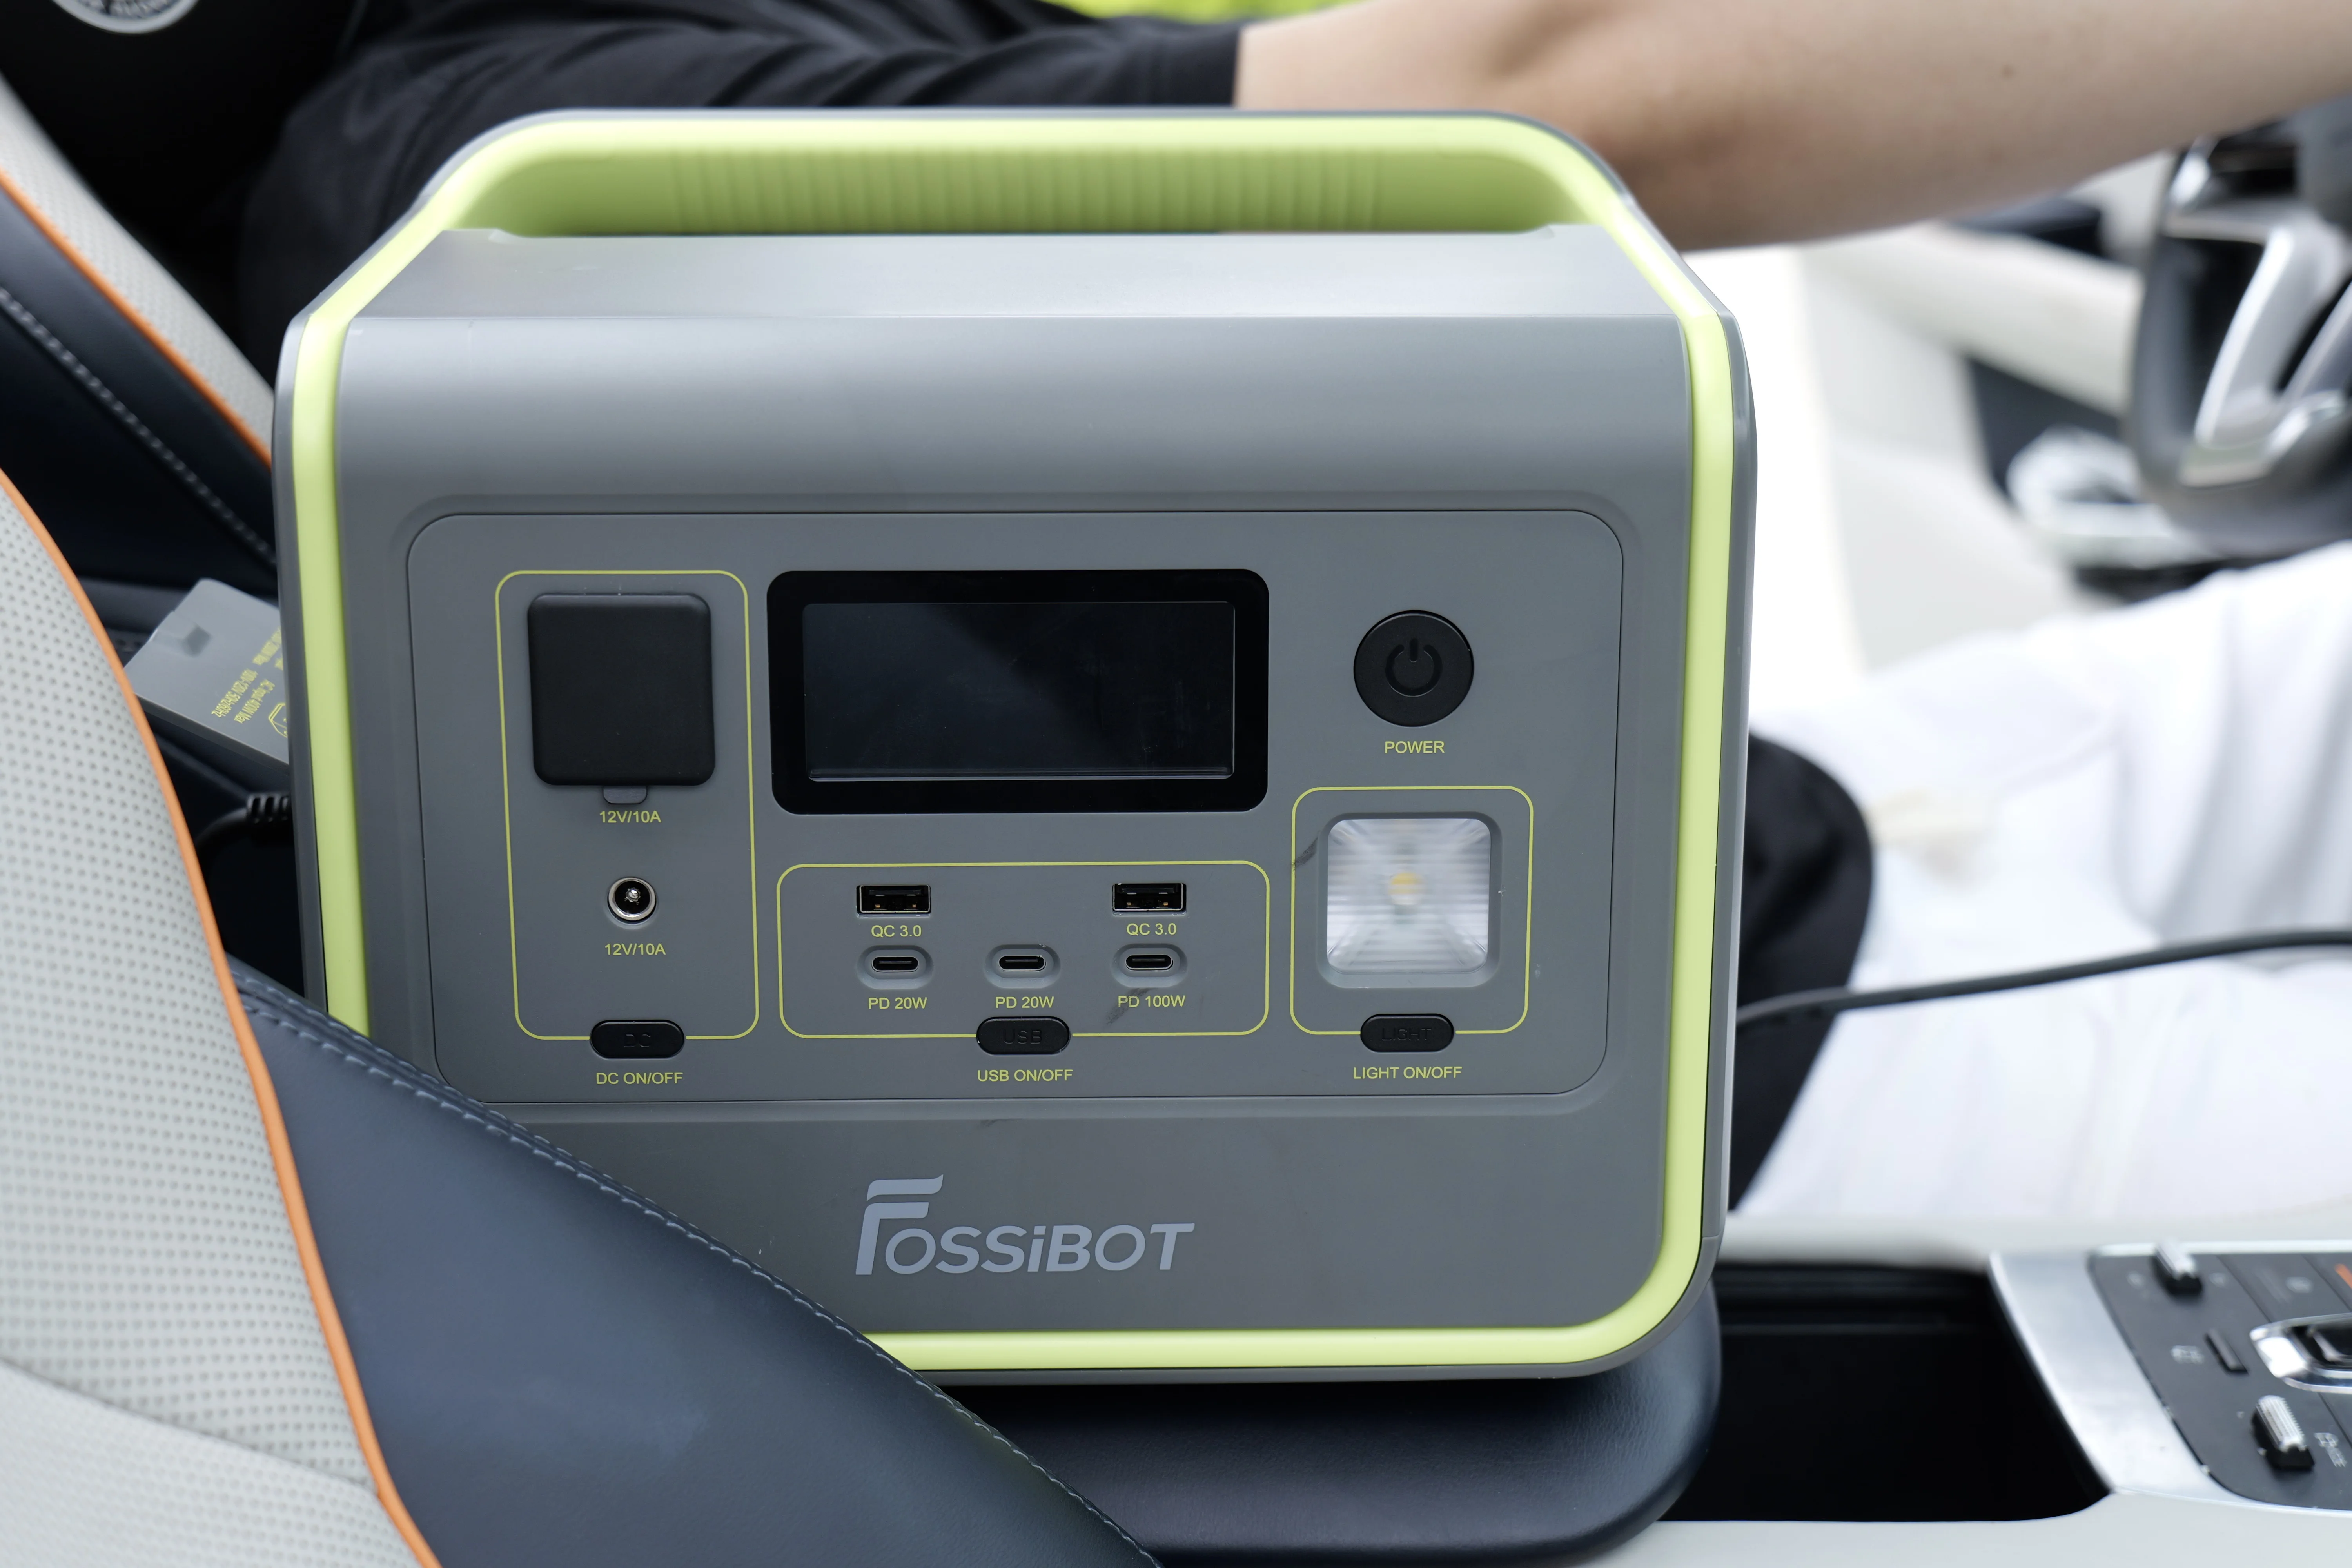 Портативная зарядная станция Fossibot F800 512Wh